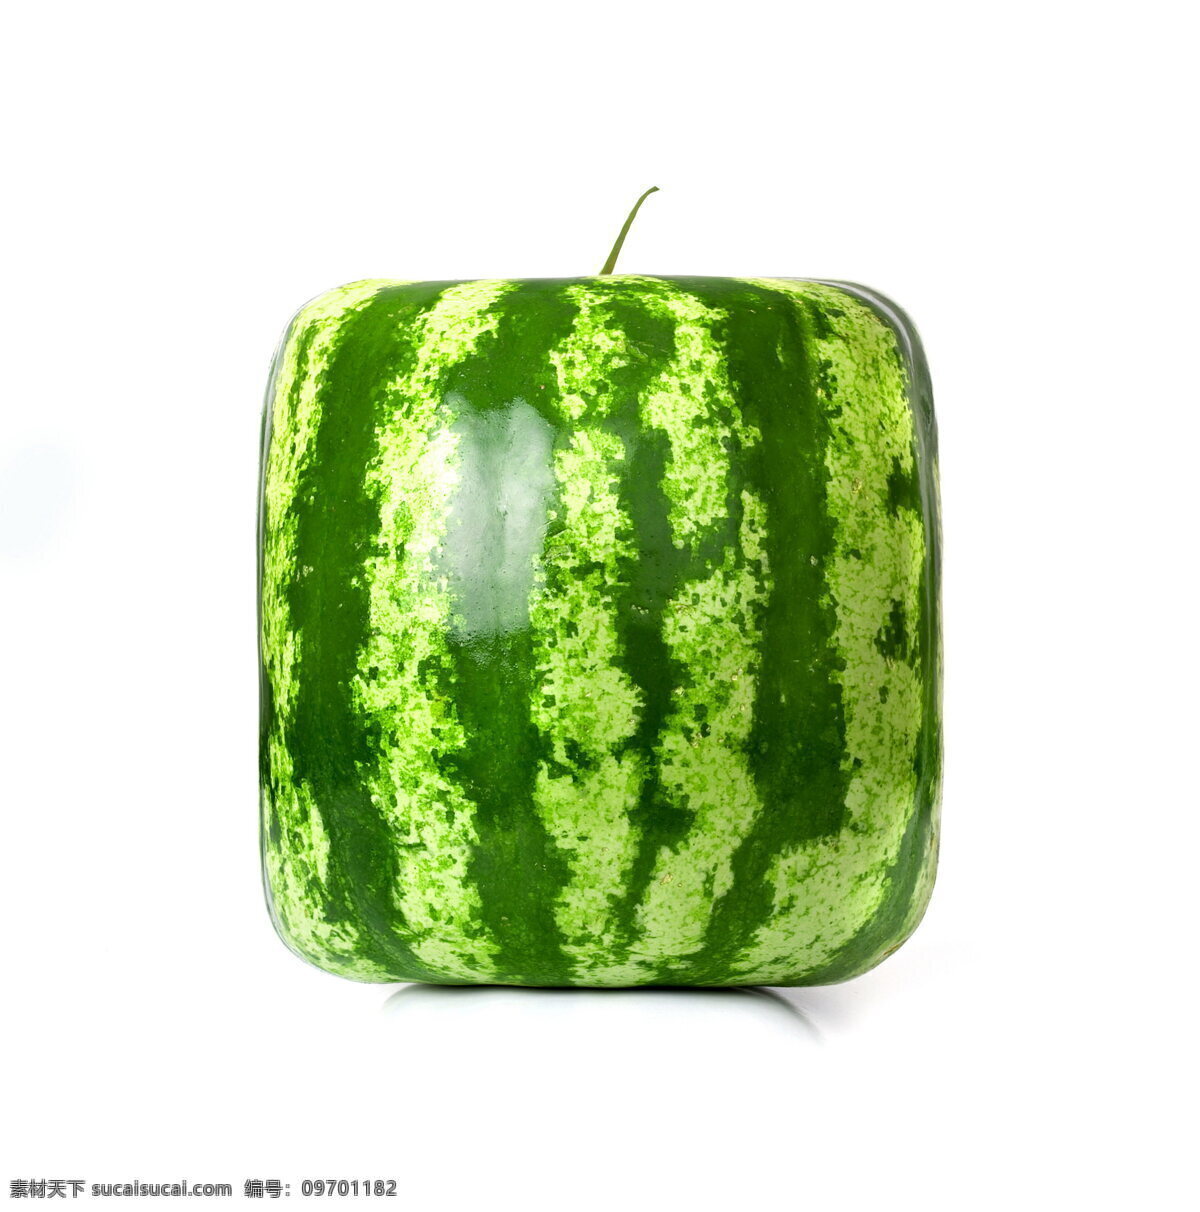 非主流西瓜 方形瓜果 绿纹西瓜皮 创意水果 高清图片下载